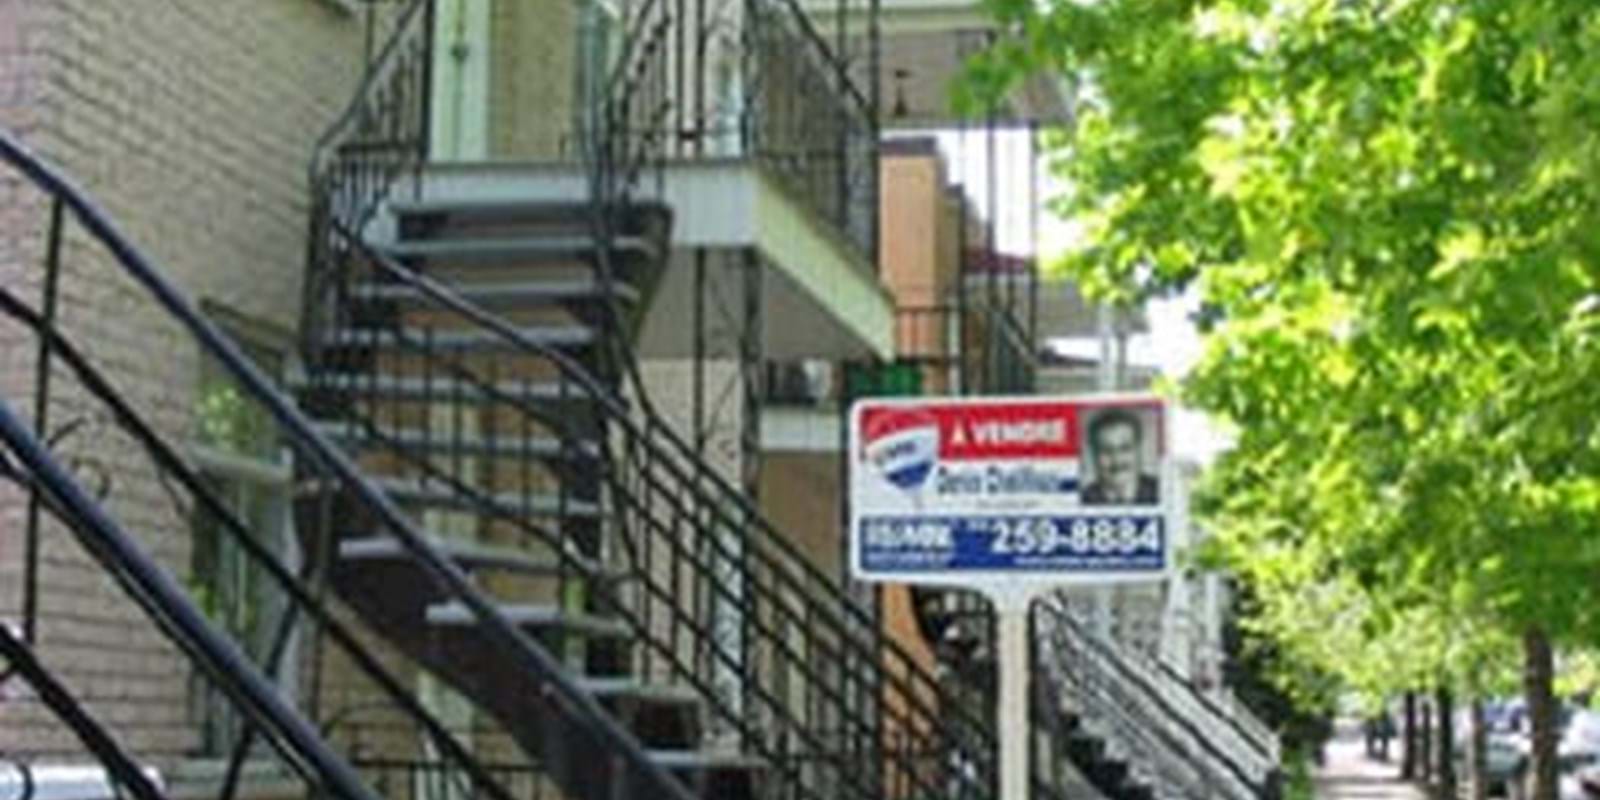 Le nombre de transactions immobilières a diminué dans la région de Montréal mais encore moins que dans les autres régions du Canada